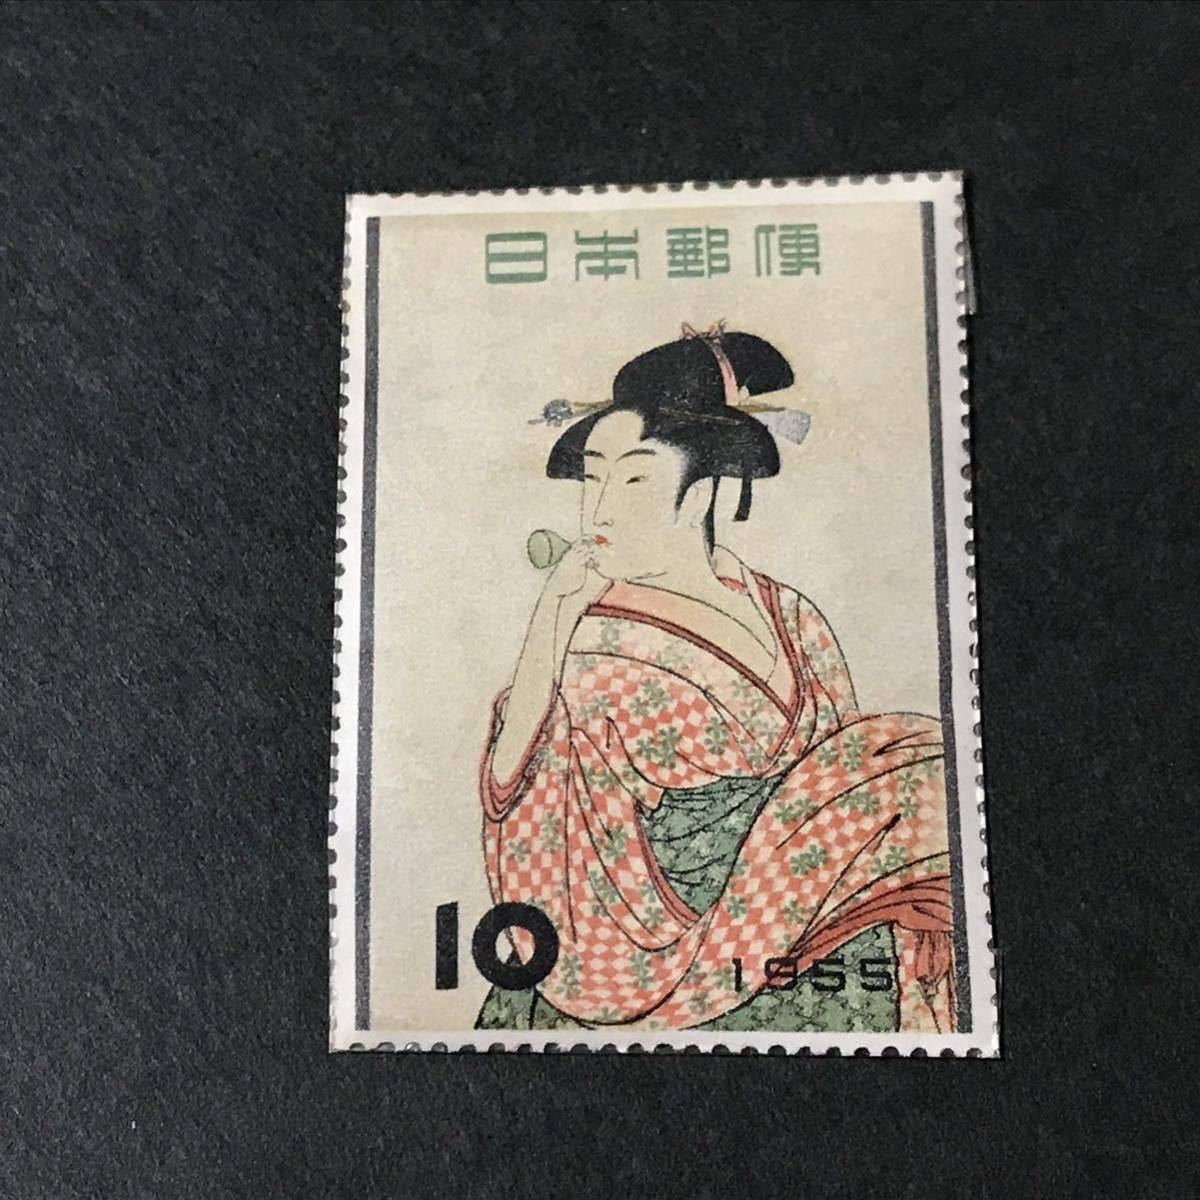 日本切手 記念切手 切手趣味週間 浮世絵源氏八景等 1955年〜1959年 10円切手 まとめてバラ9枚_画像6